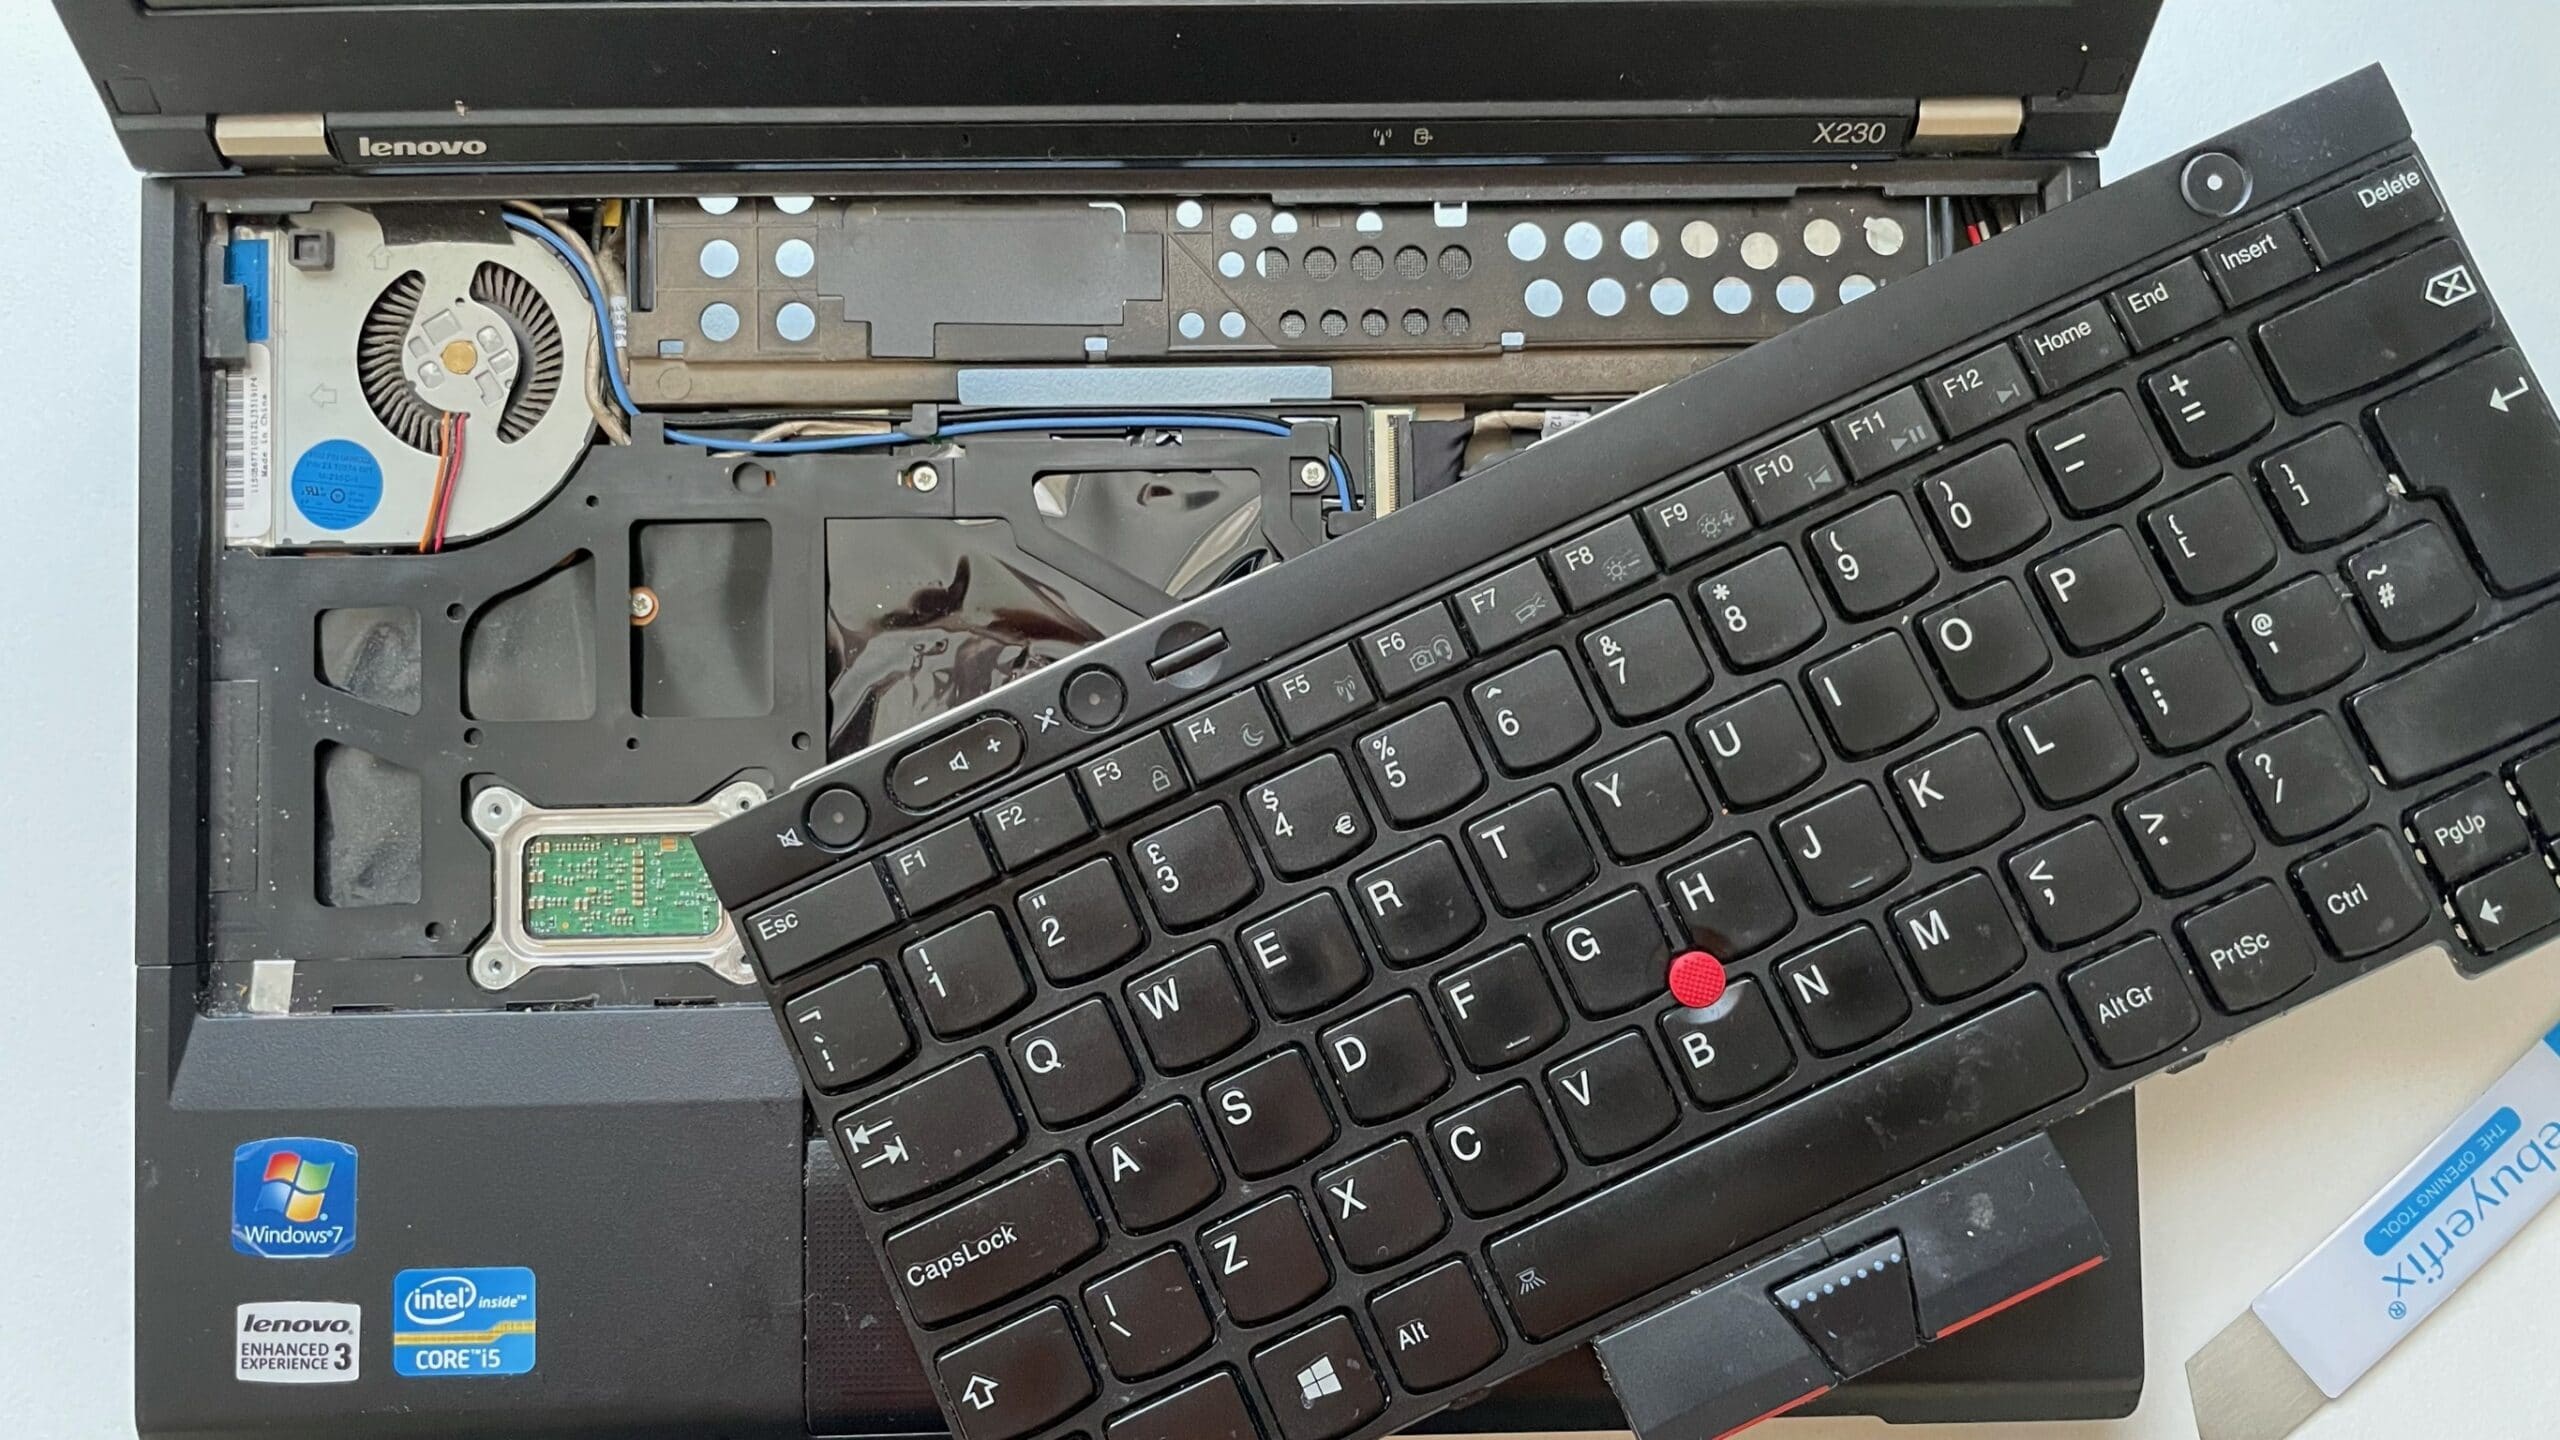 Laptop Keyboard Replacement